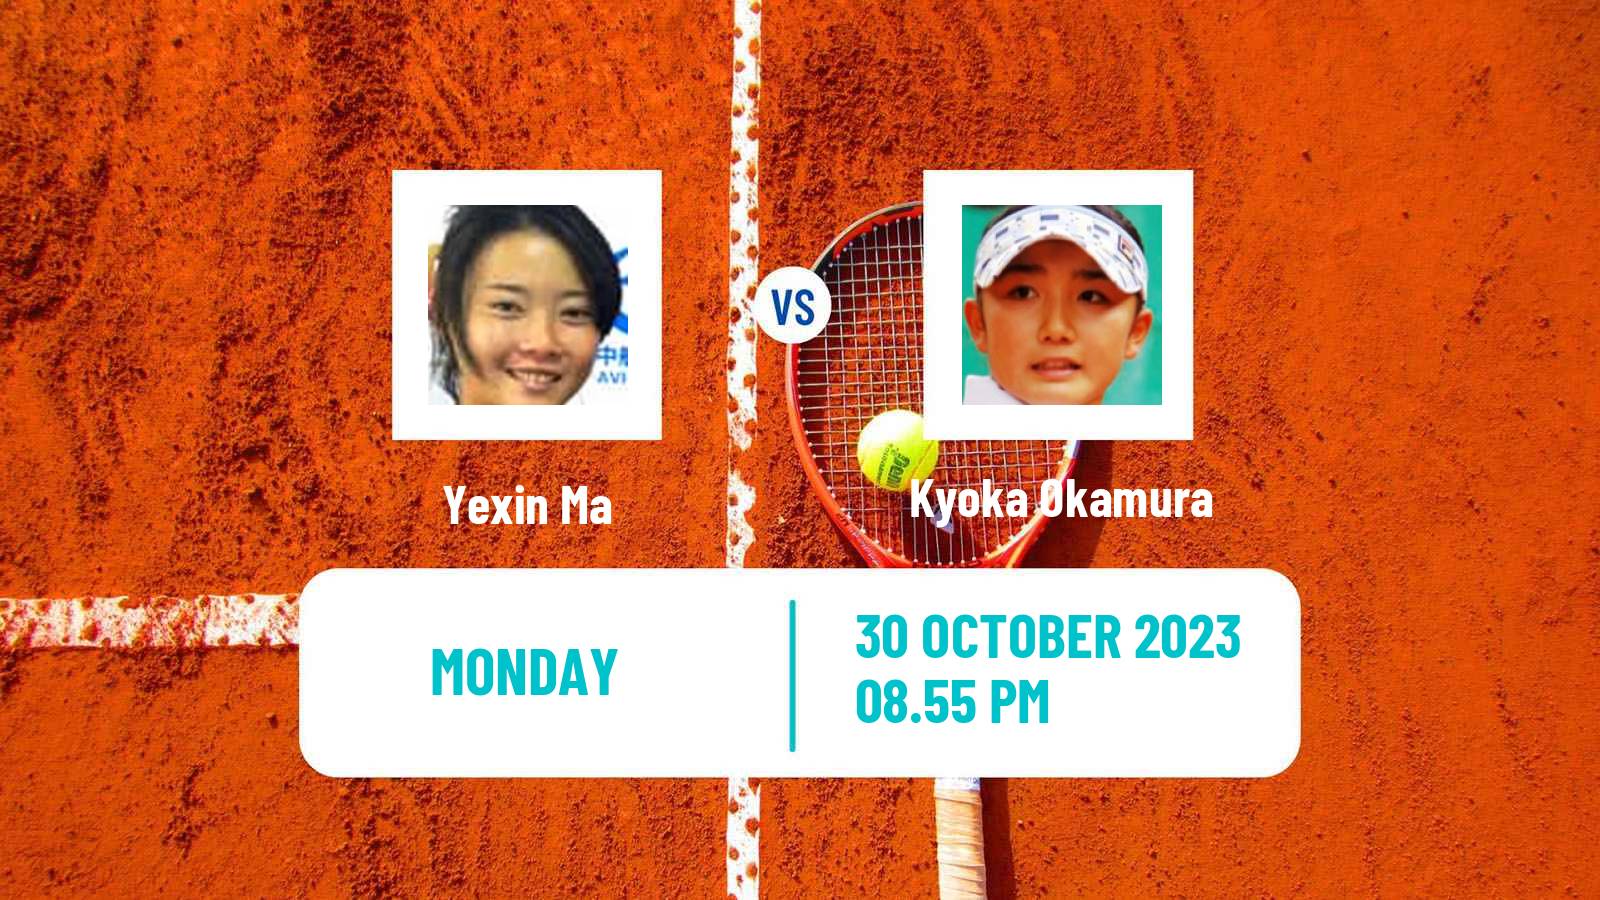 Tennis ITF W60 Sydney Women 2023 Yexin Ma - Kyoka Okamura